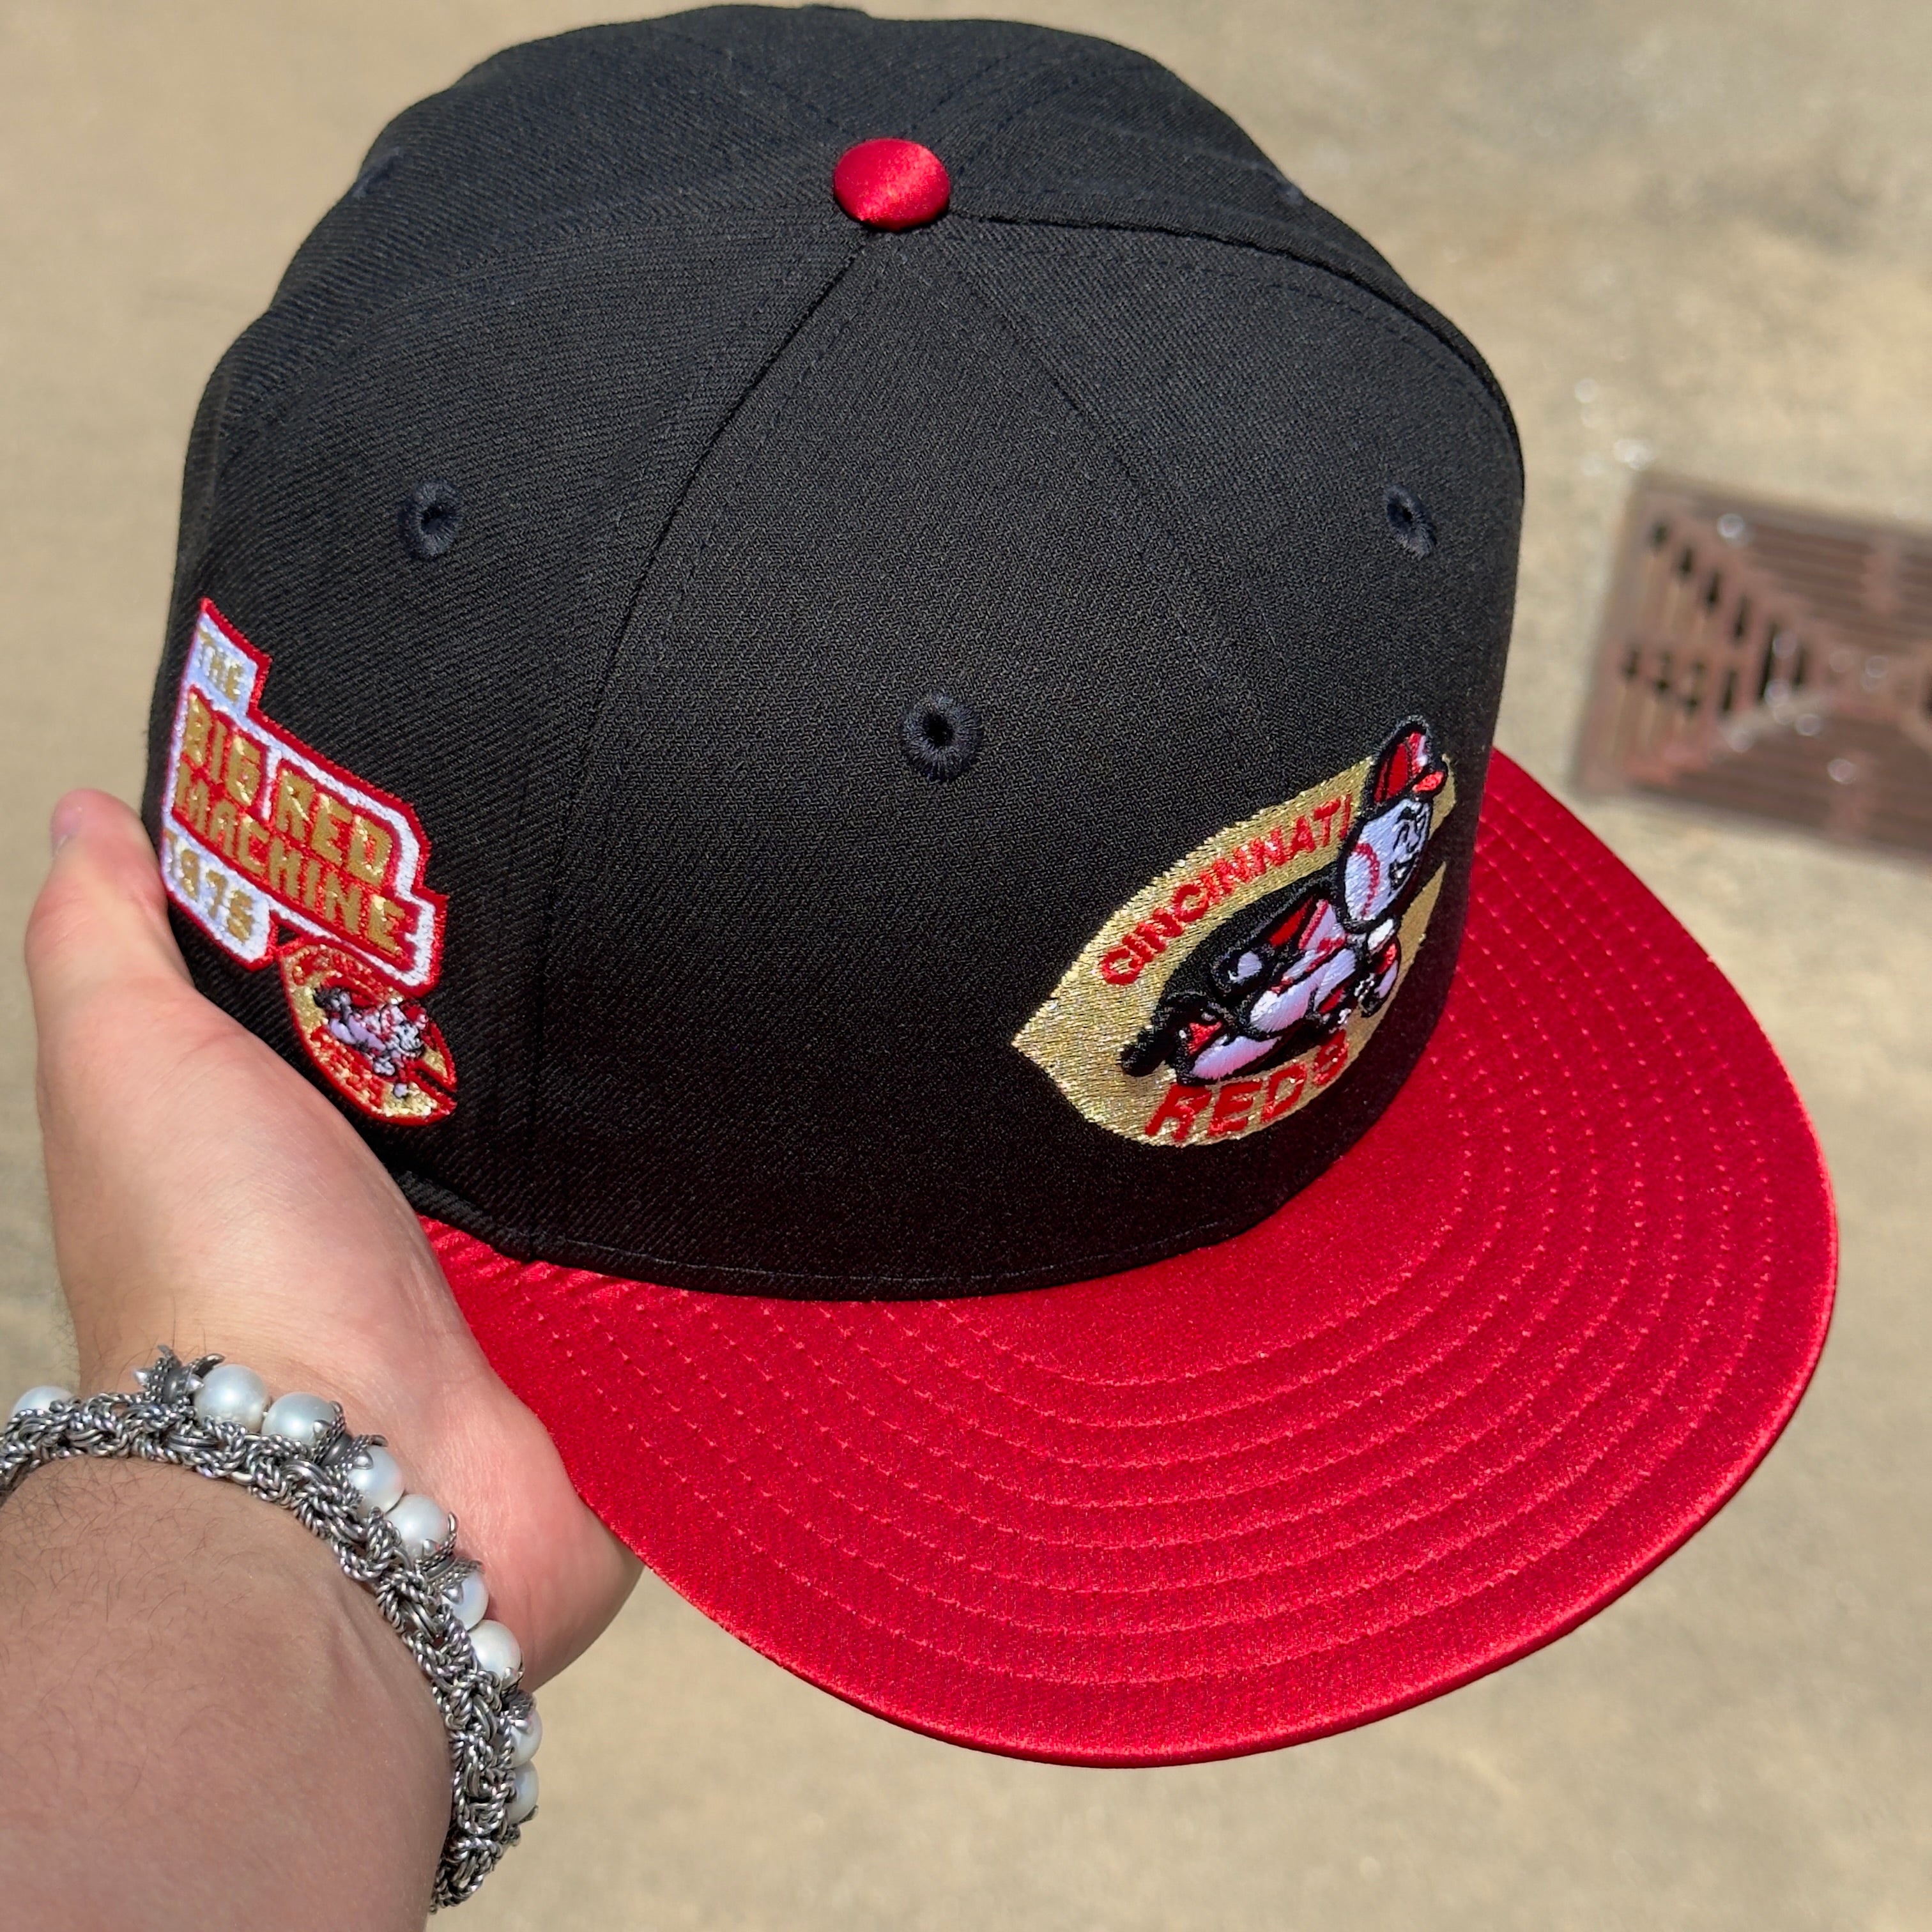 NEW Black Cincinnati Reds Big Red Machine 1975 Satin 59fifty New Era Fitted Hat Cap